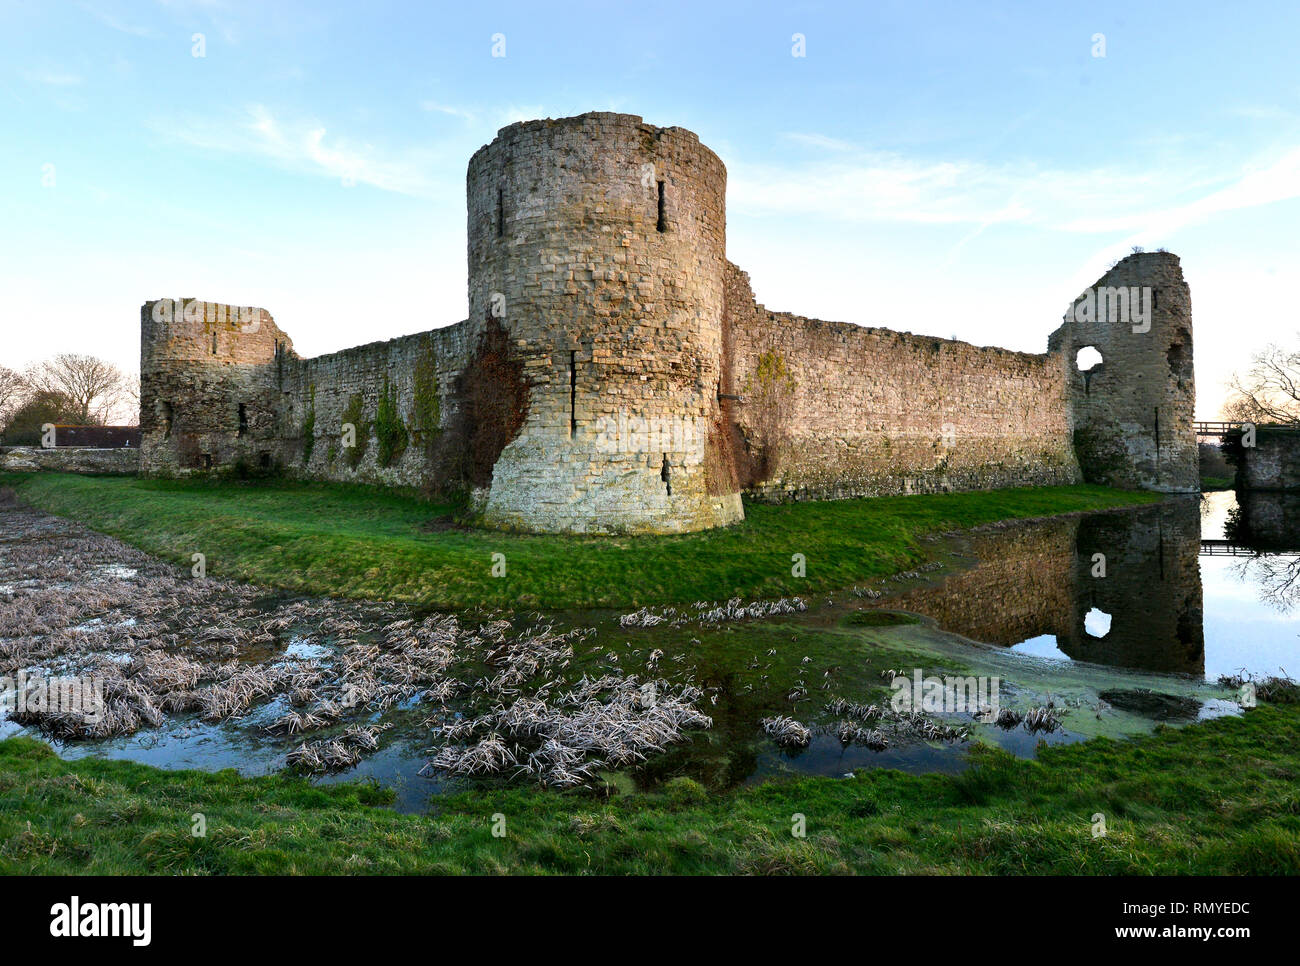 Le château de Pevensey, East Sussex, UK. Les ruines d'un château médiéval dans les murs d'un ancien fort Romain. Banque D'Images